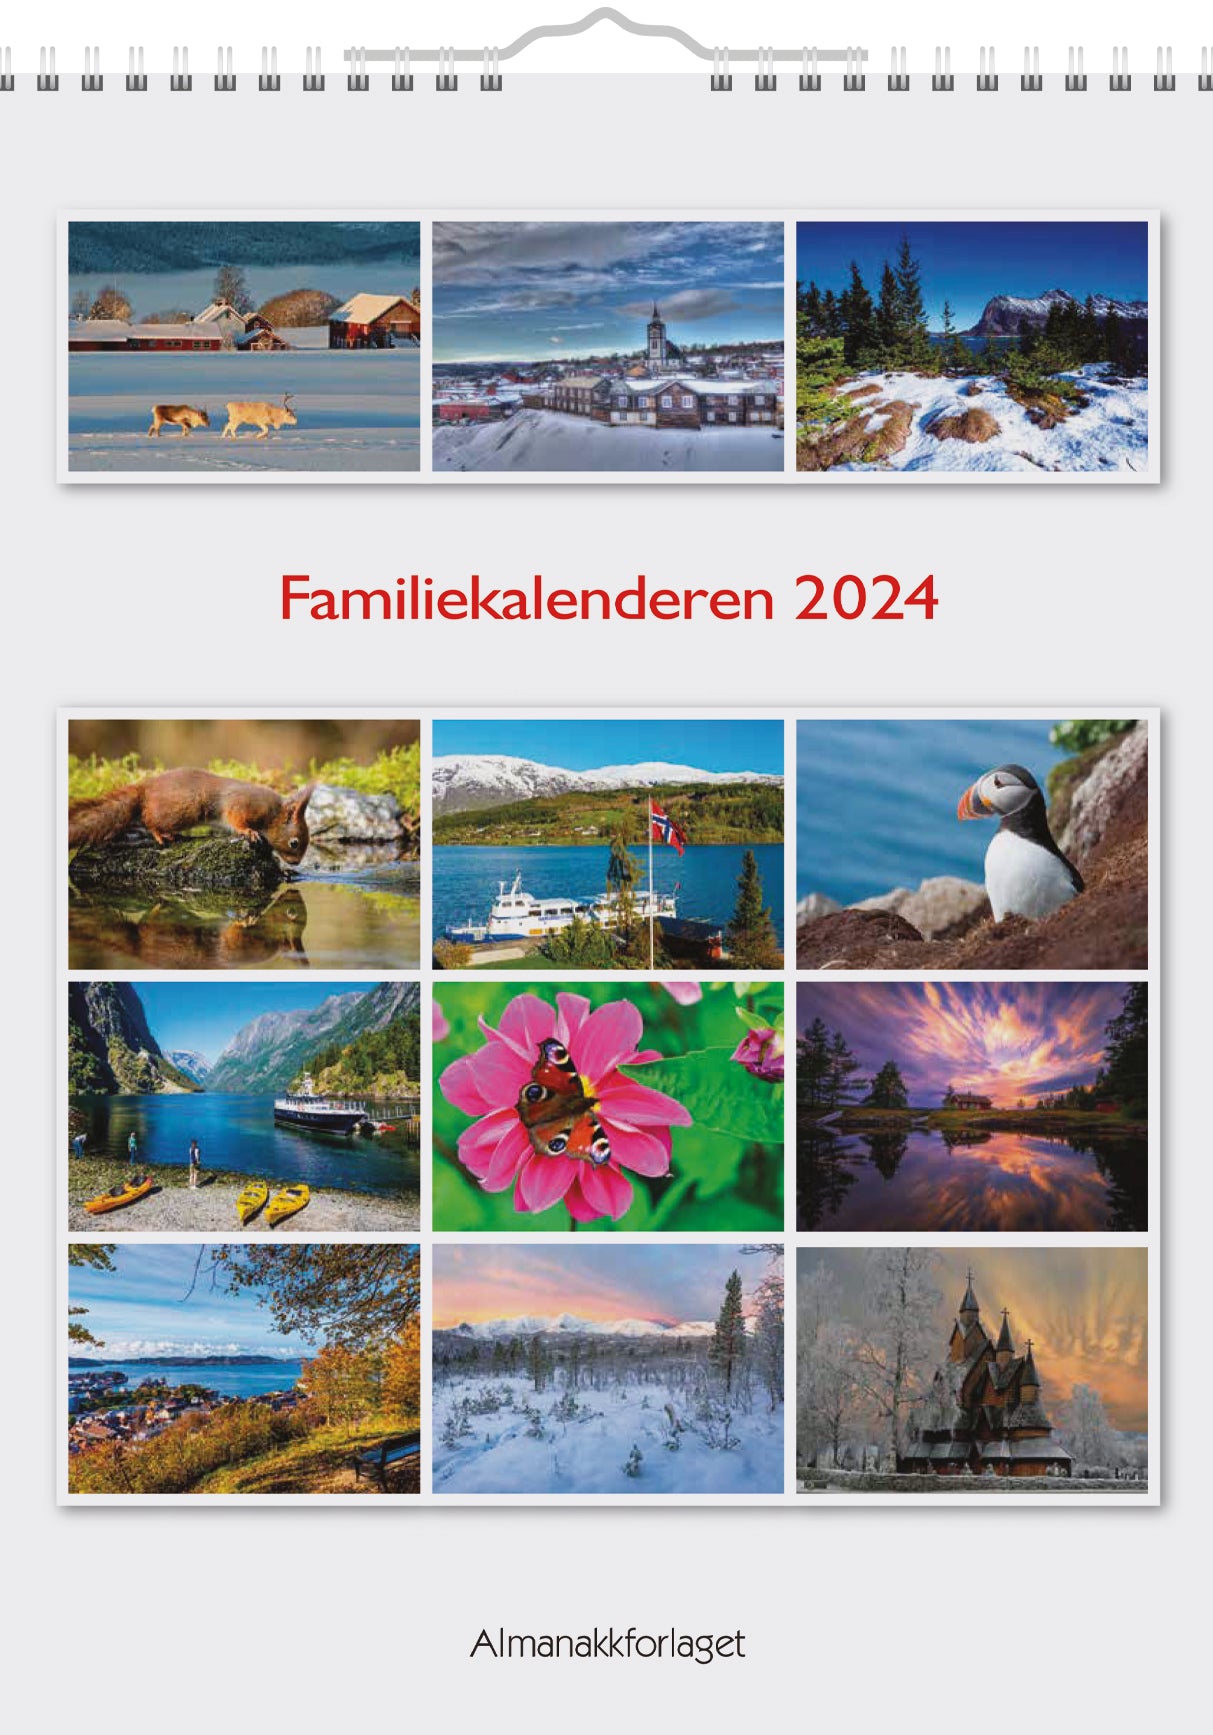 Familiekalenderen 2024, Front